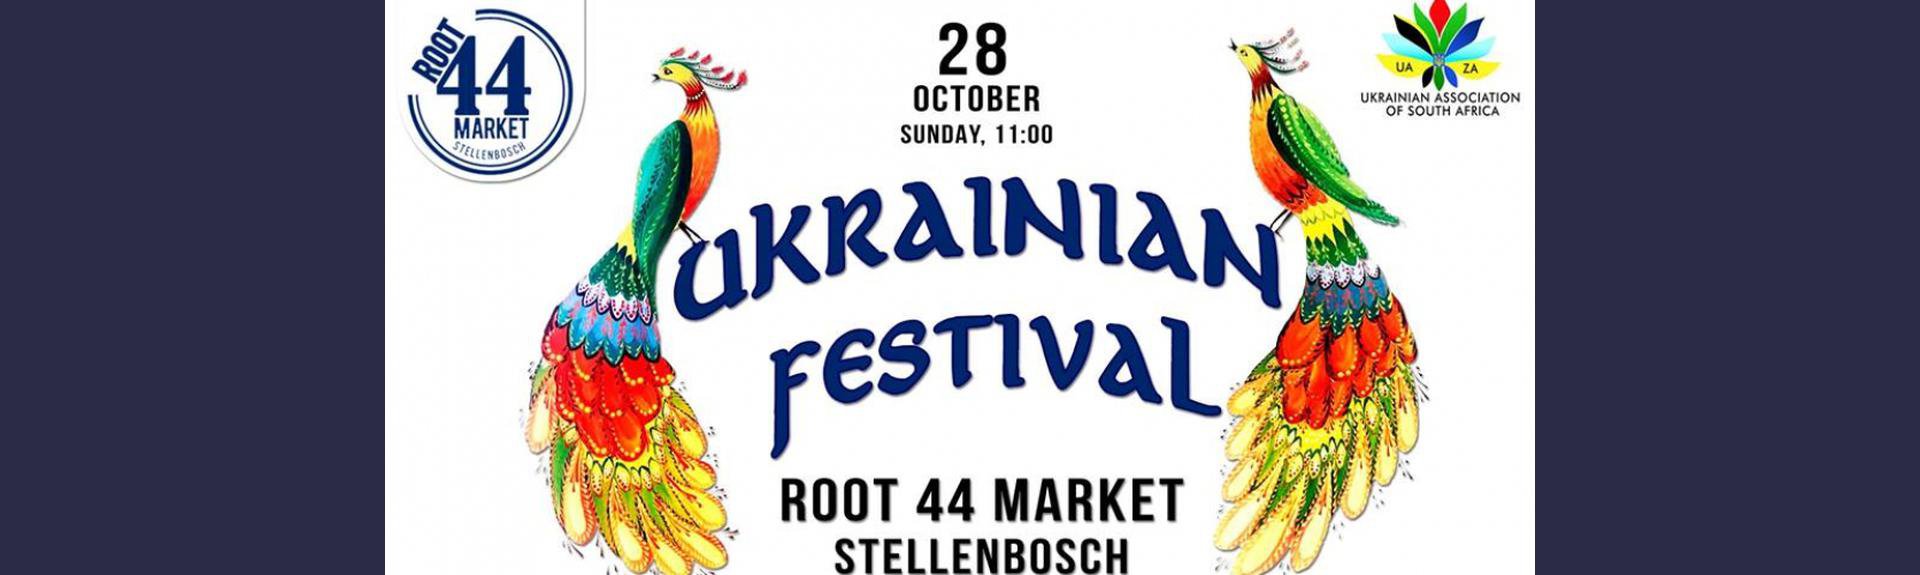 Ukrainian Festival at Root 44 Market 